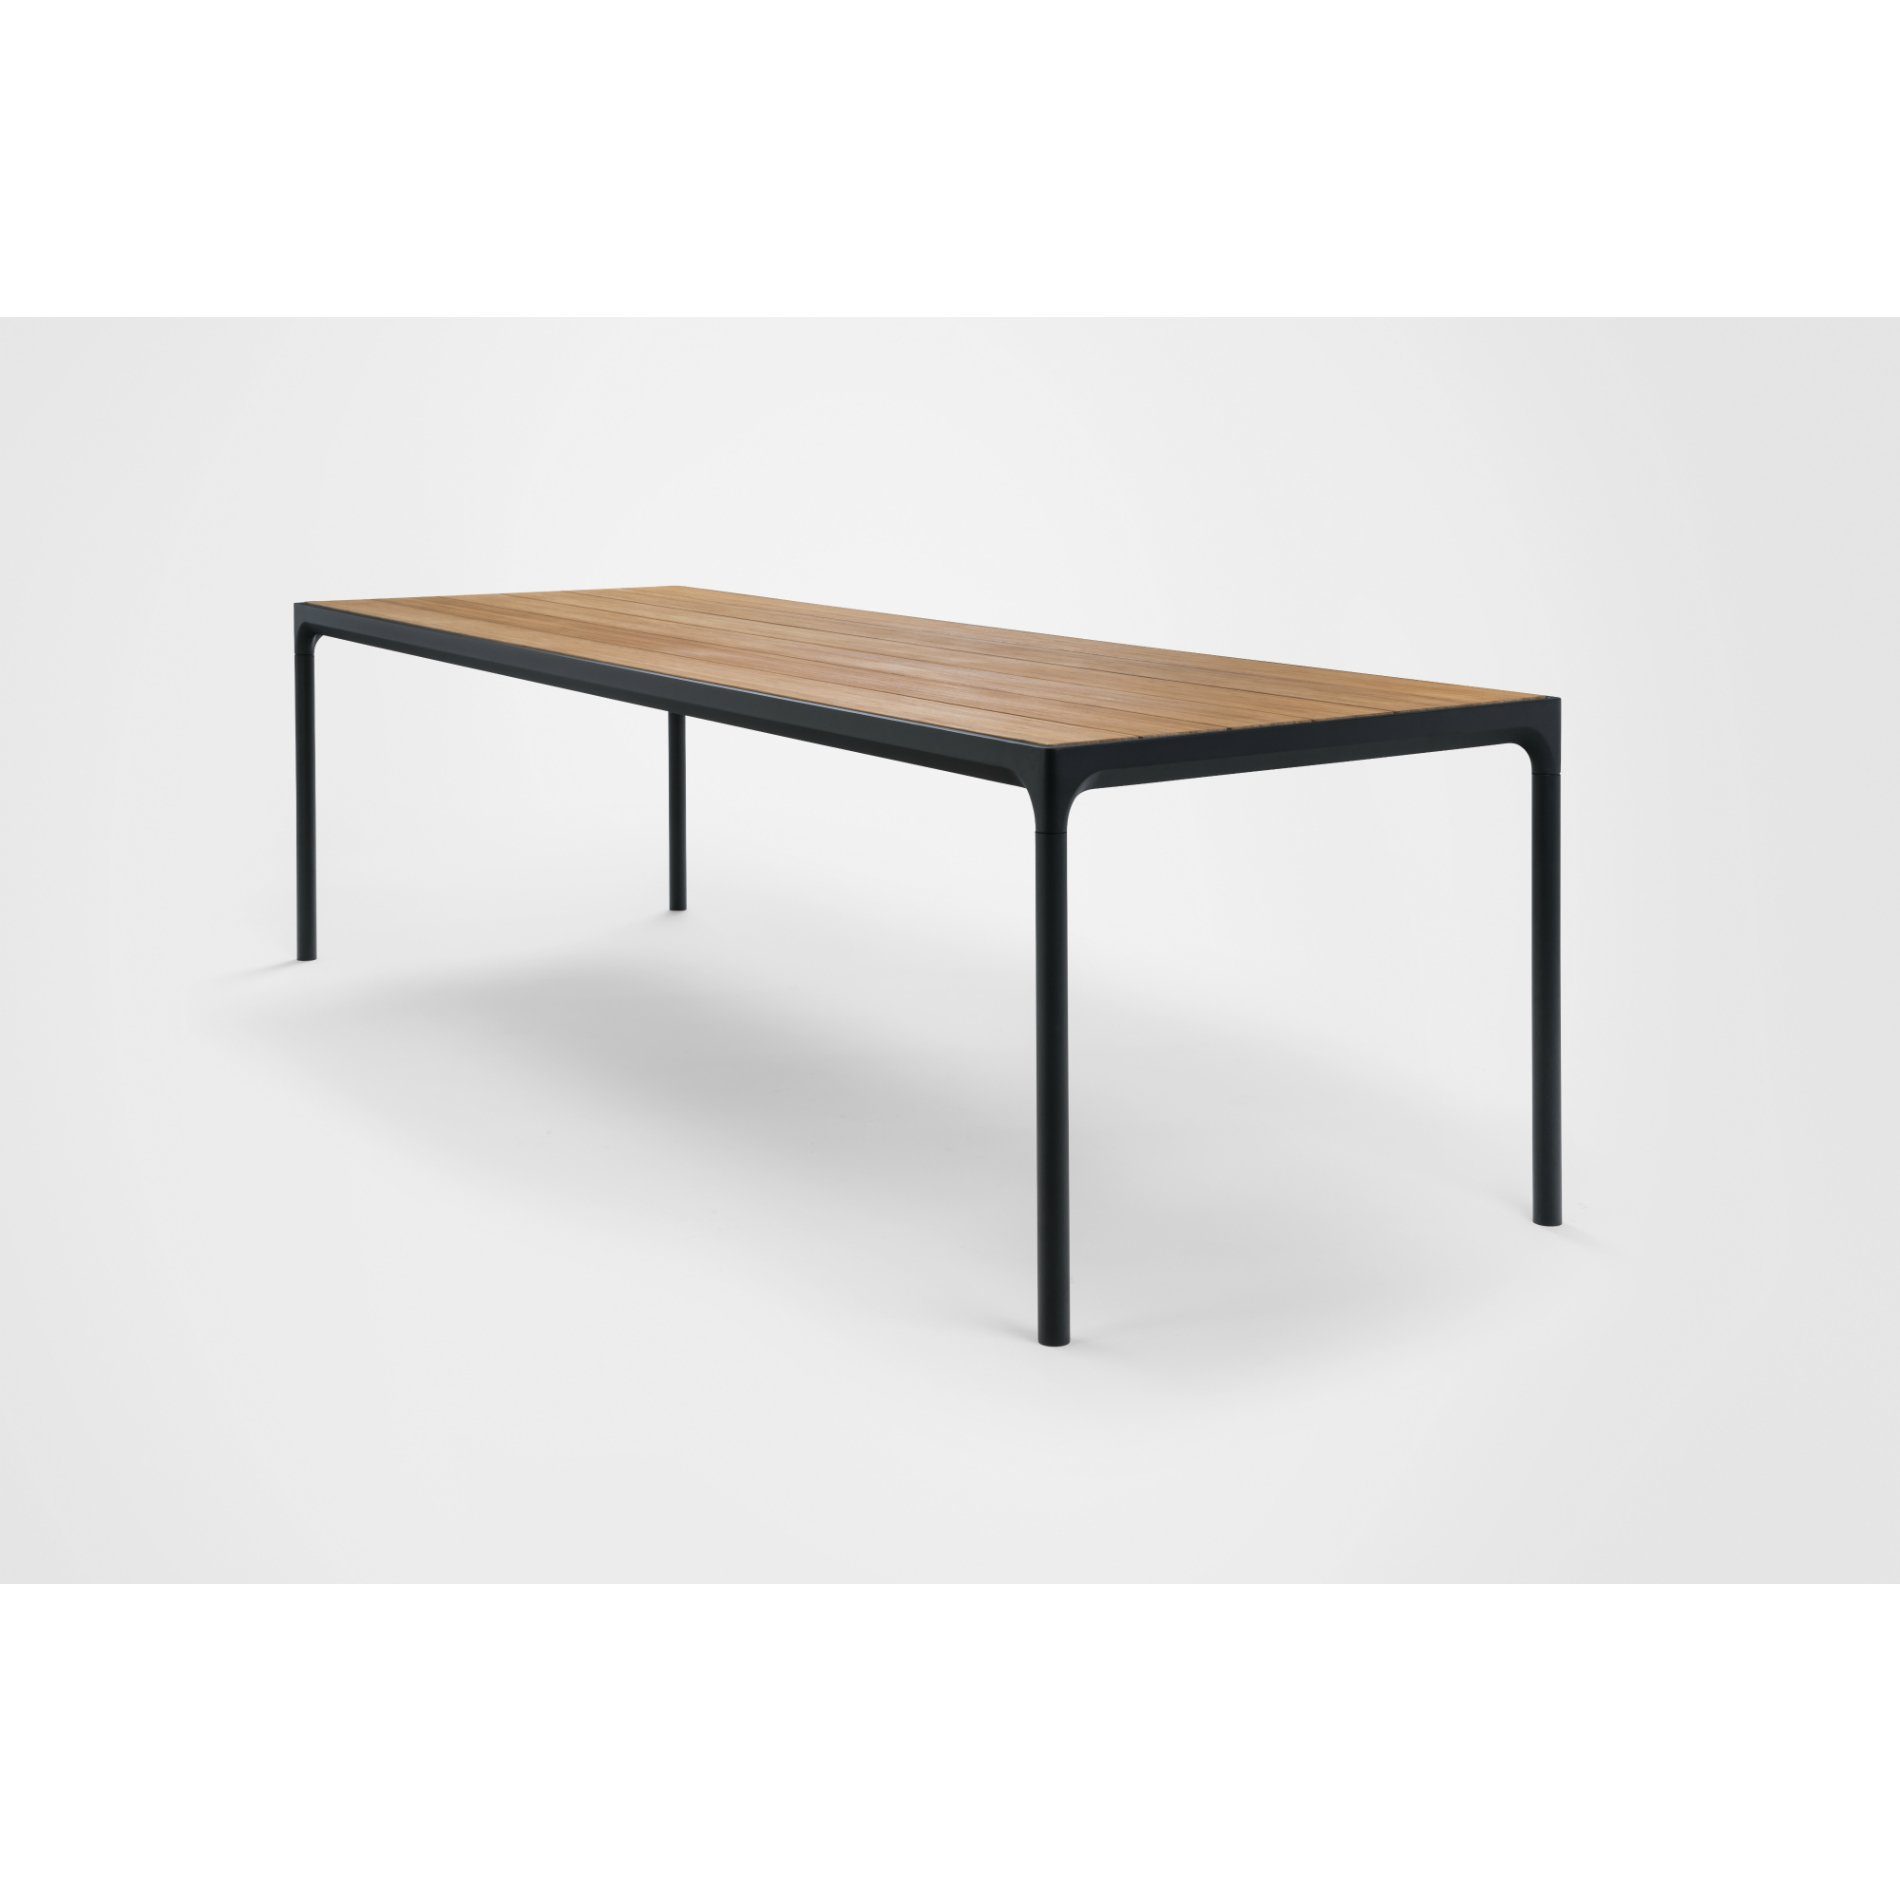 Gartentisch "Four" von Houe, Gestell Aluminium schwarz, Tischplatte Bambus, 270x90 cm